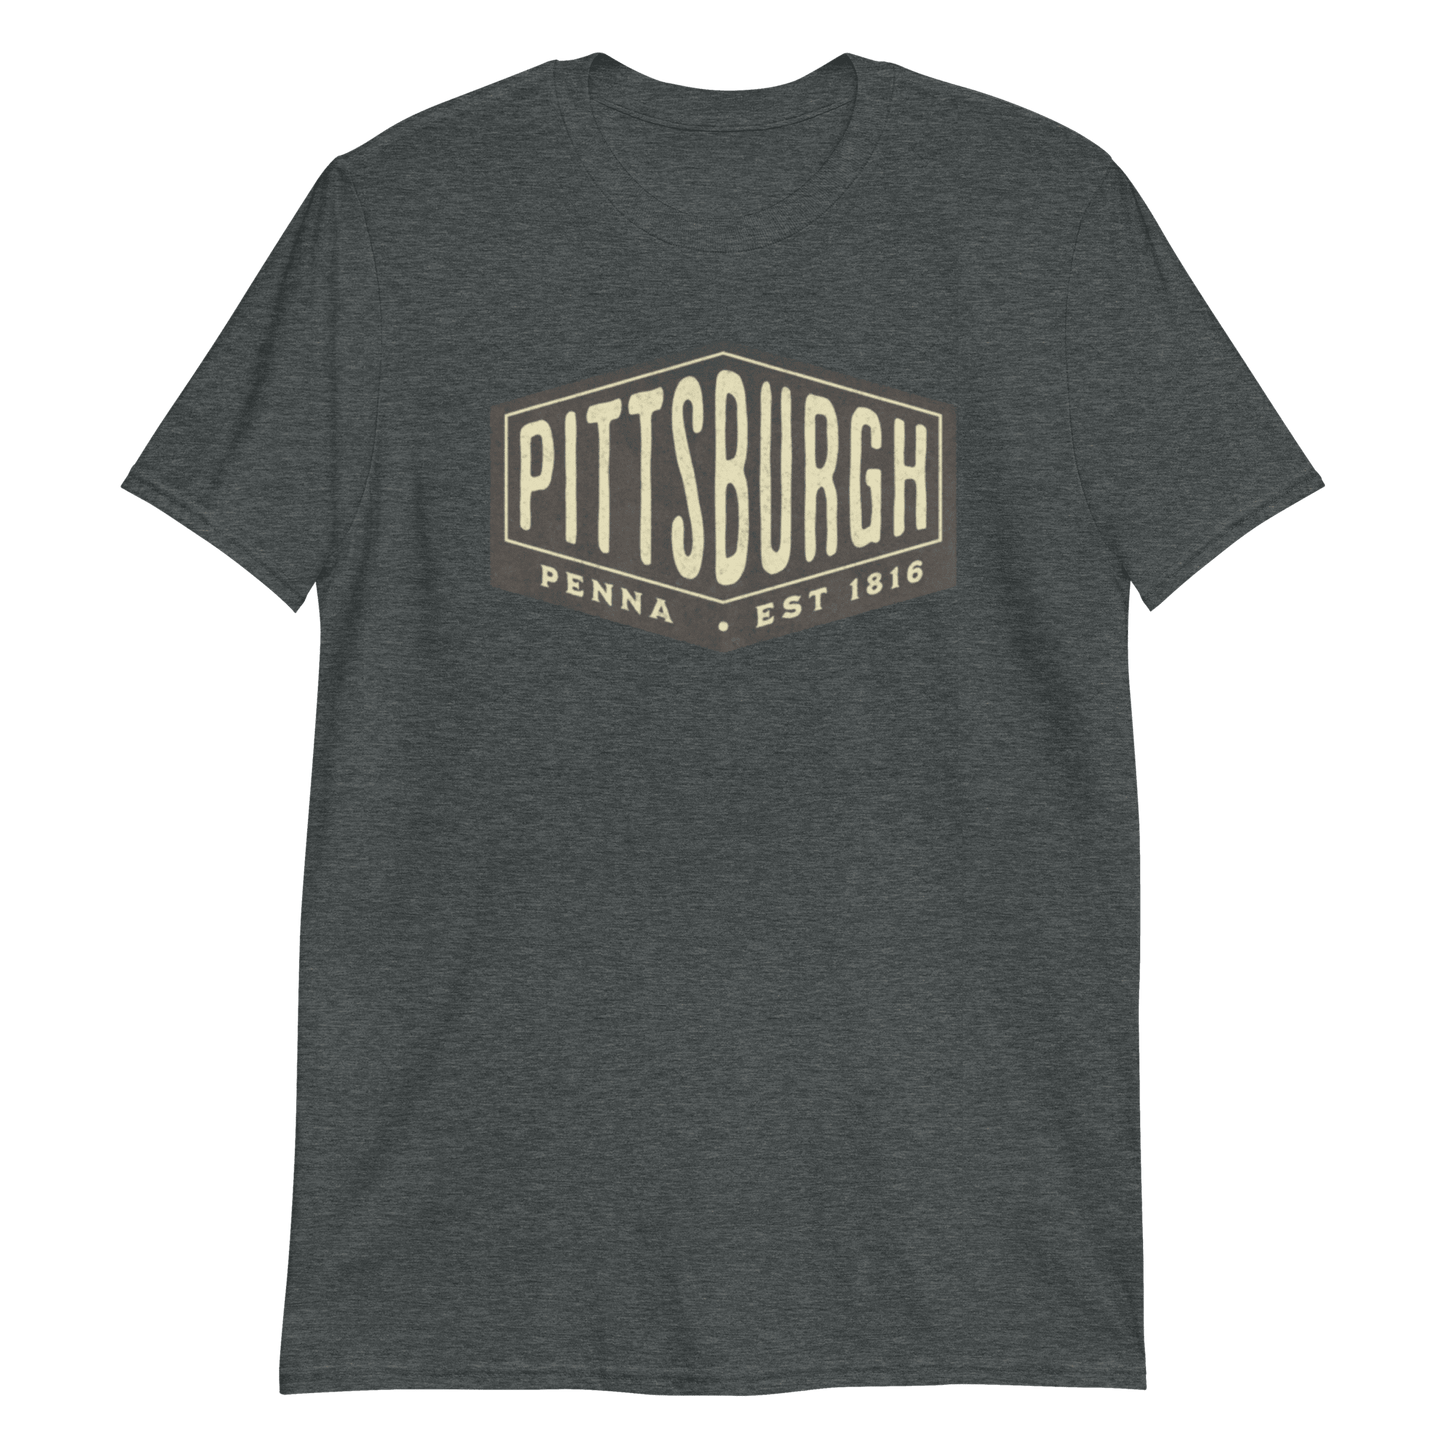 Pittsburgh Penna Est 1816 Vintage Graphic T-Shirt, Steel City Tee, Yinzer Shirt Yinzergear Dark Heather S 